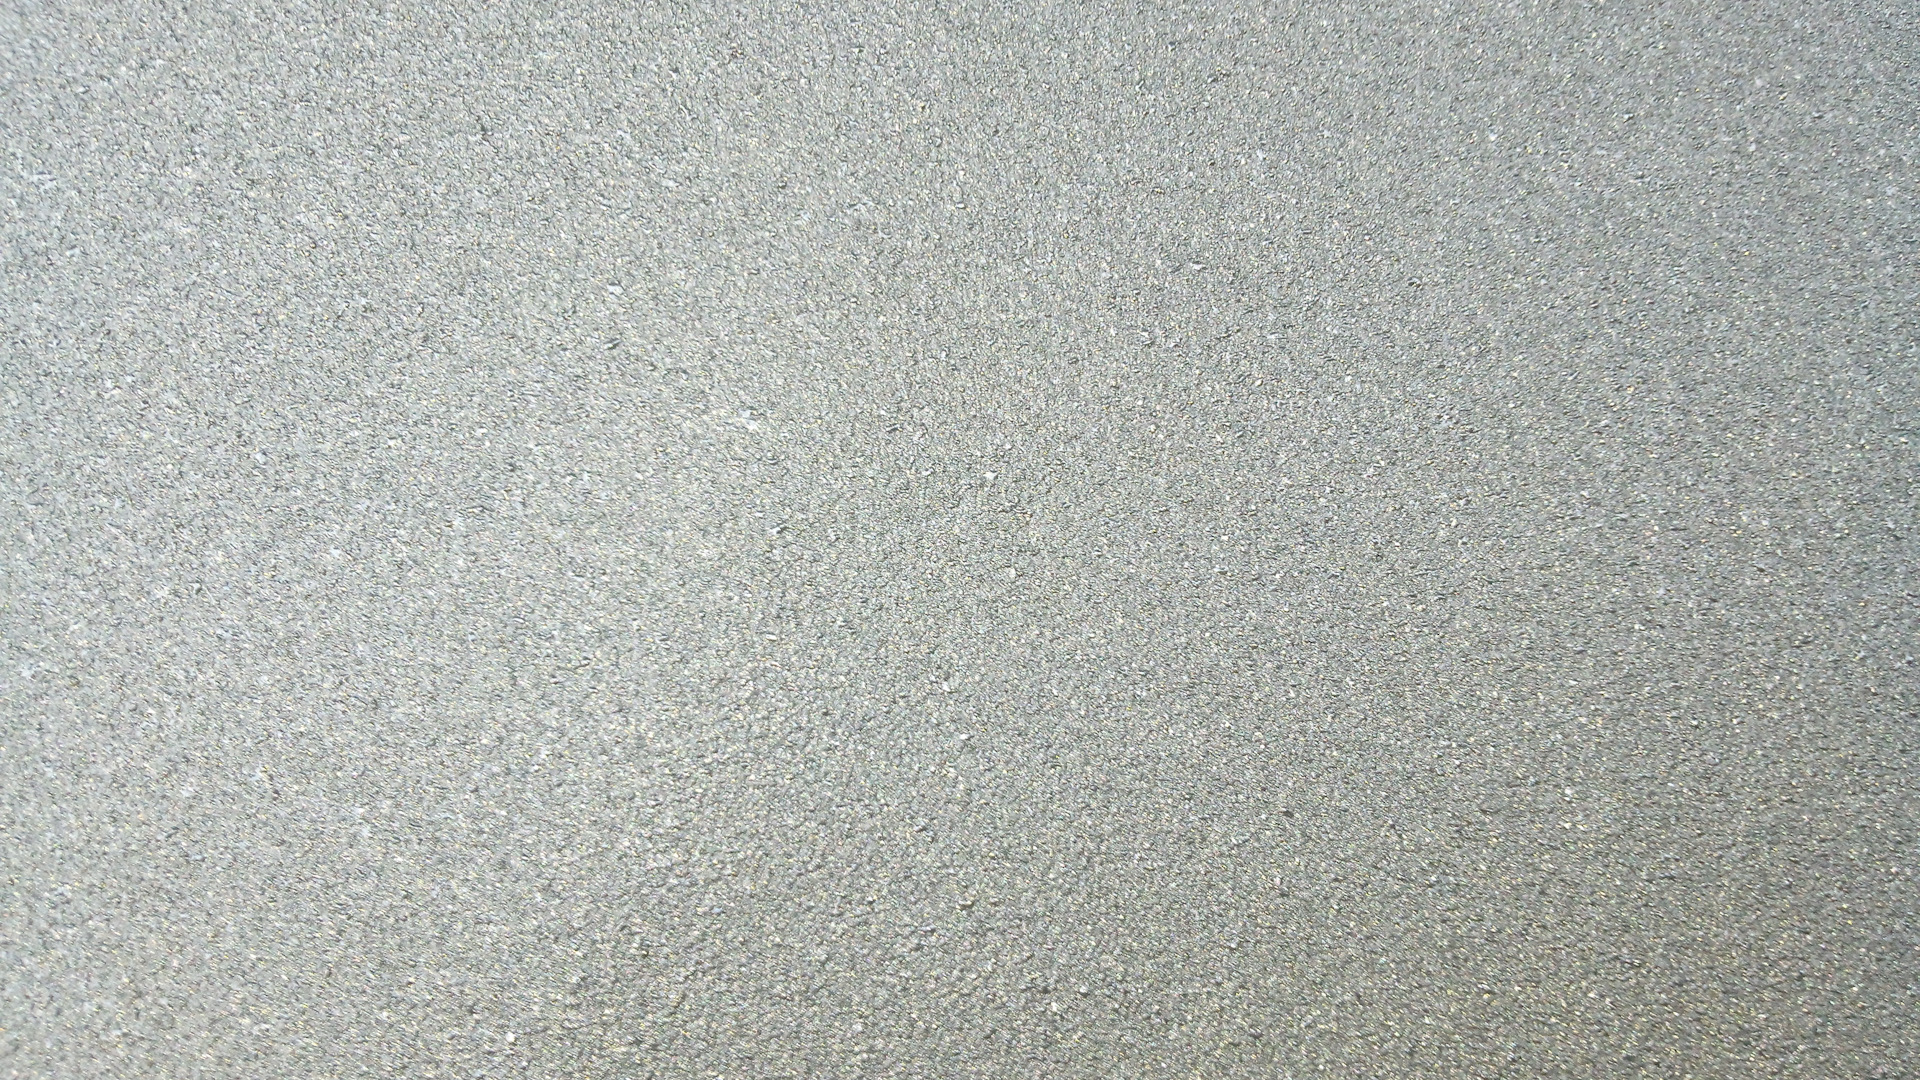 Серый шагрень. RAL 9007 шагрень. 9016 Шагрень. Песок кварцевый фракции 0.8-2.0мм обогащенный. Песок кварцевый фракции 0,4-0,8мм для мрамора.